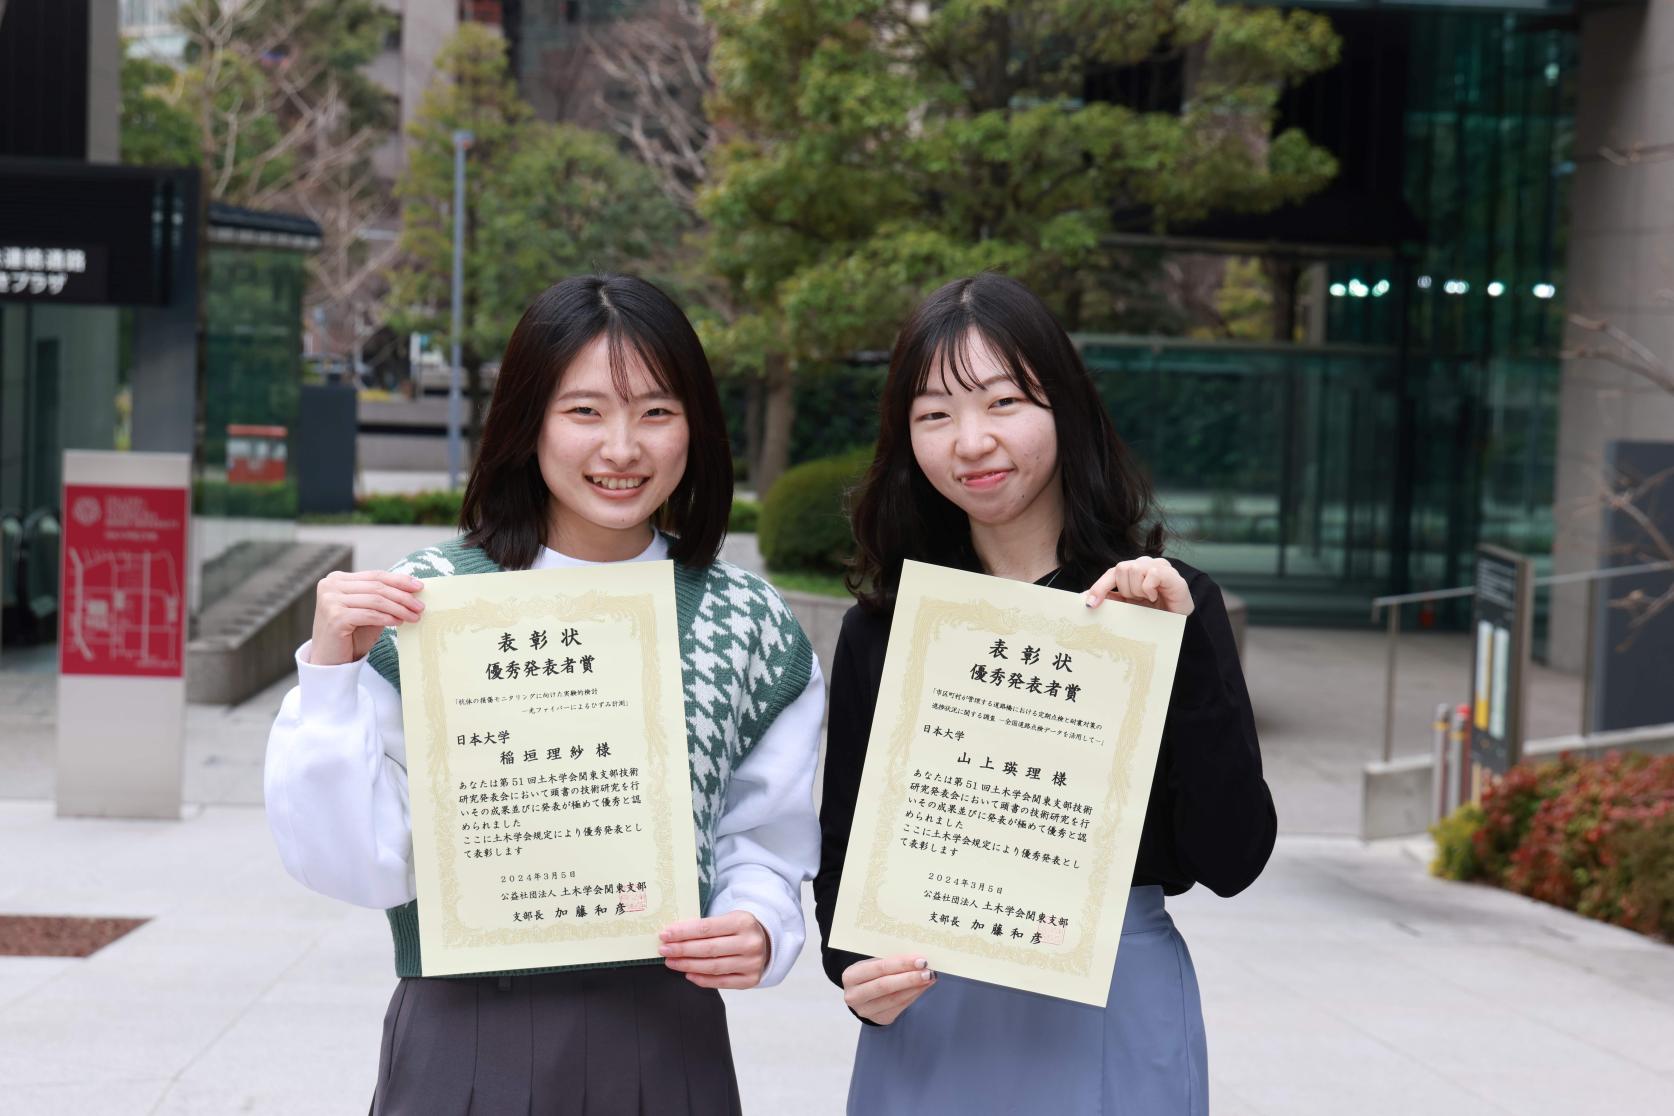 まちづくり工学科4年(受賞当時)の稲垣理紗さんと山上瑛理さんが、第51回土木学会関東支部技術研究発表会において、優秀発表者賞をそれぞれ受賞しました。